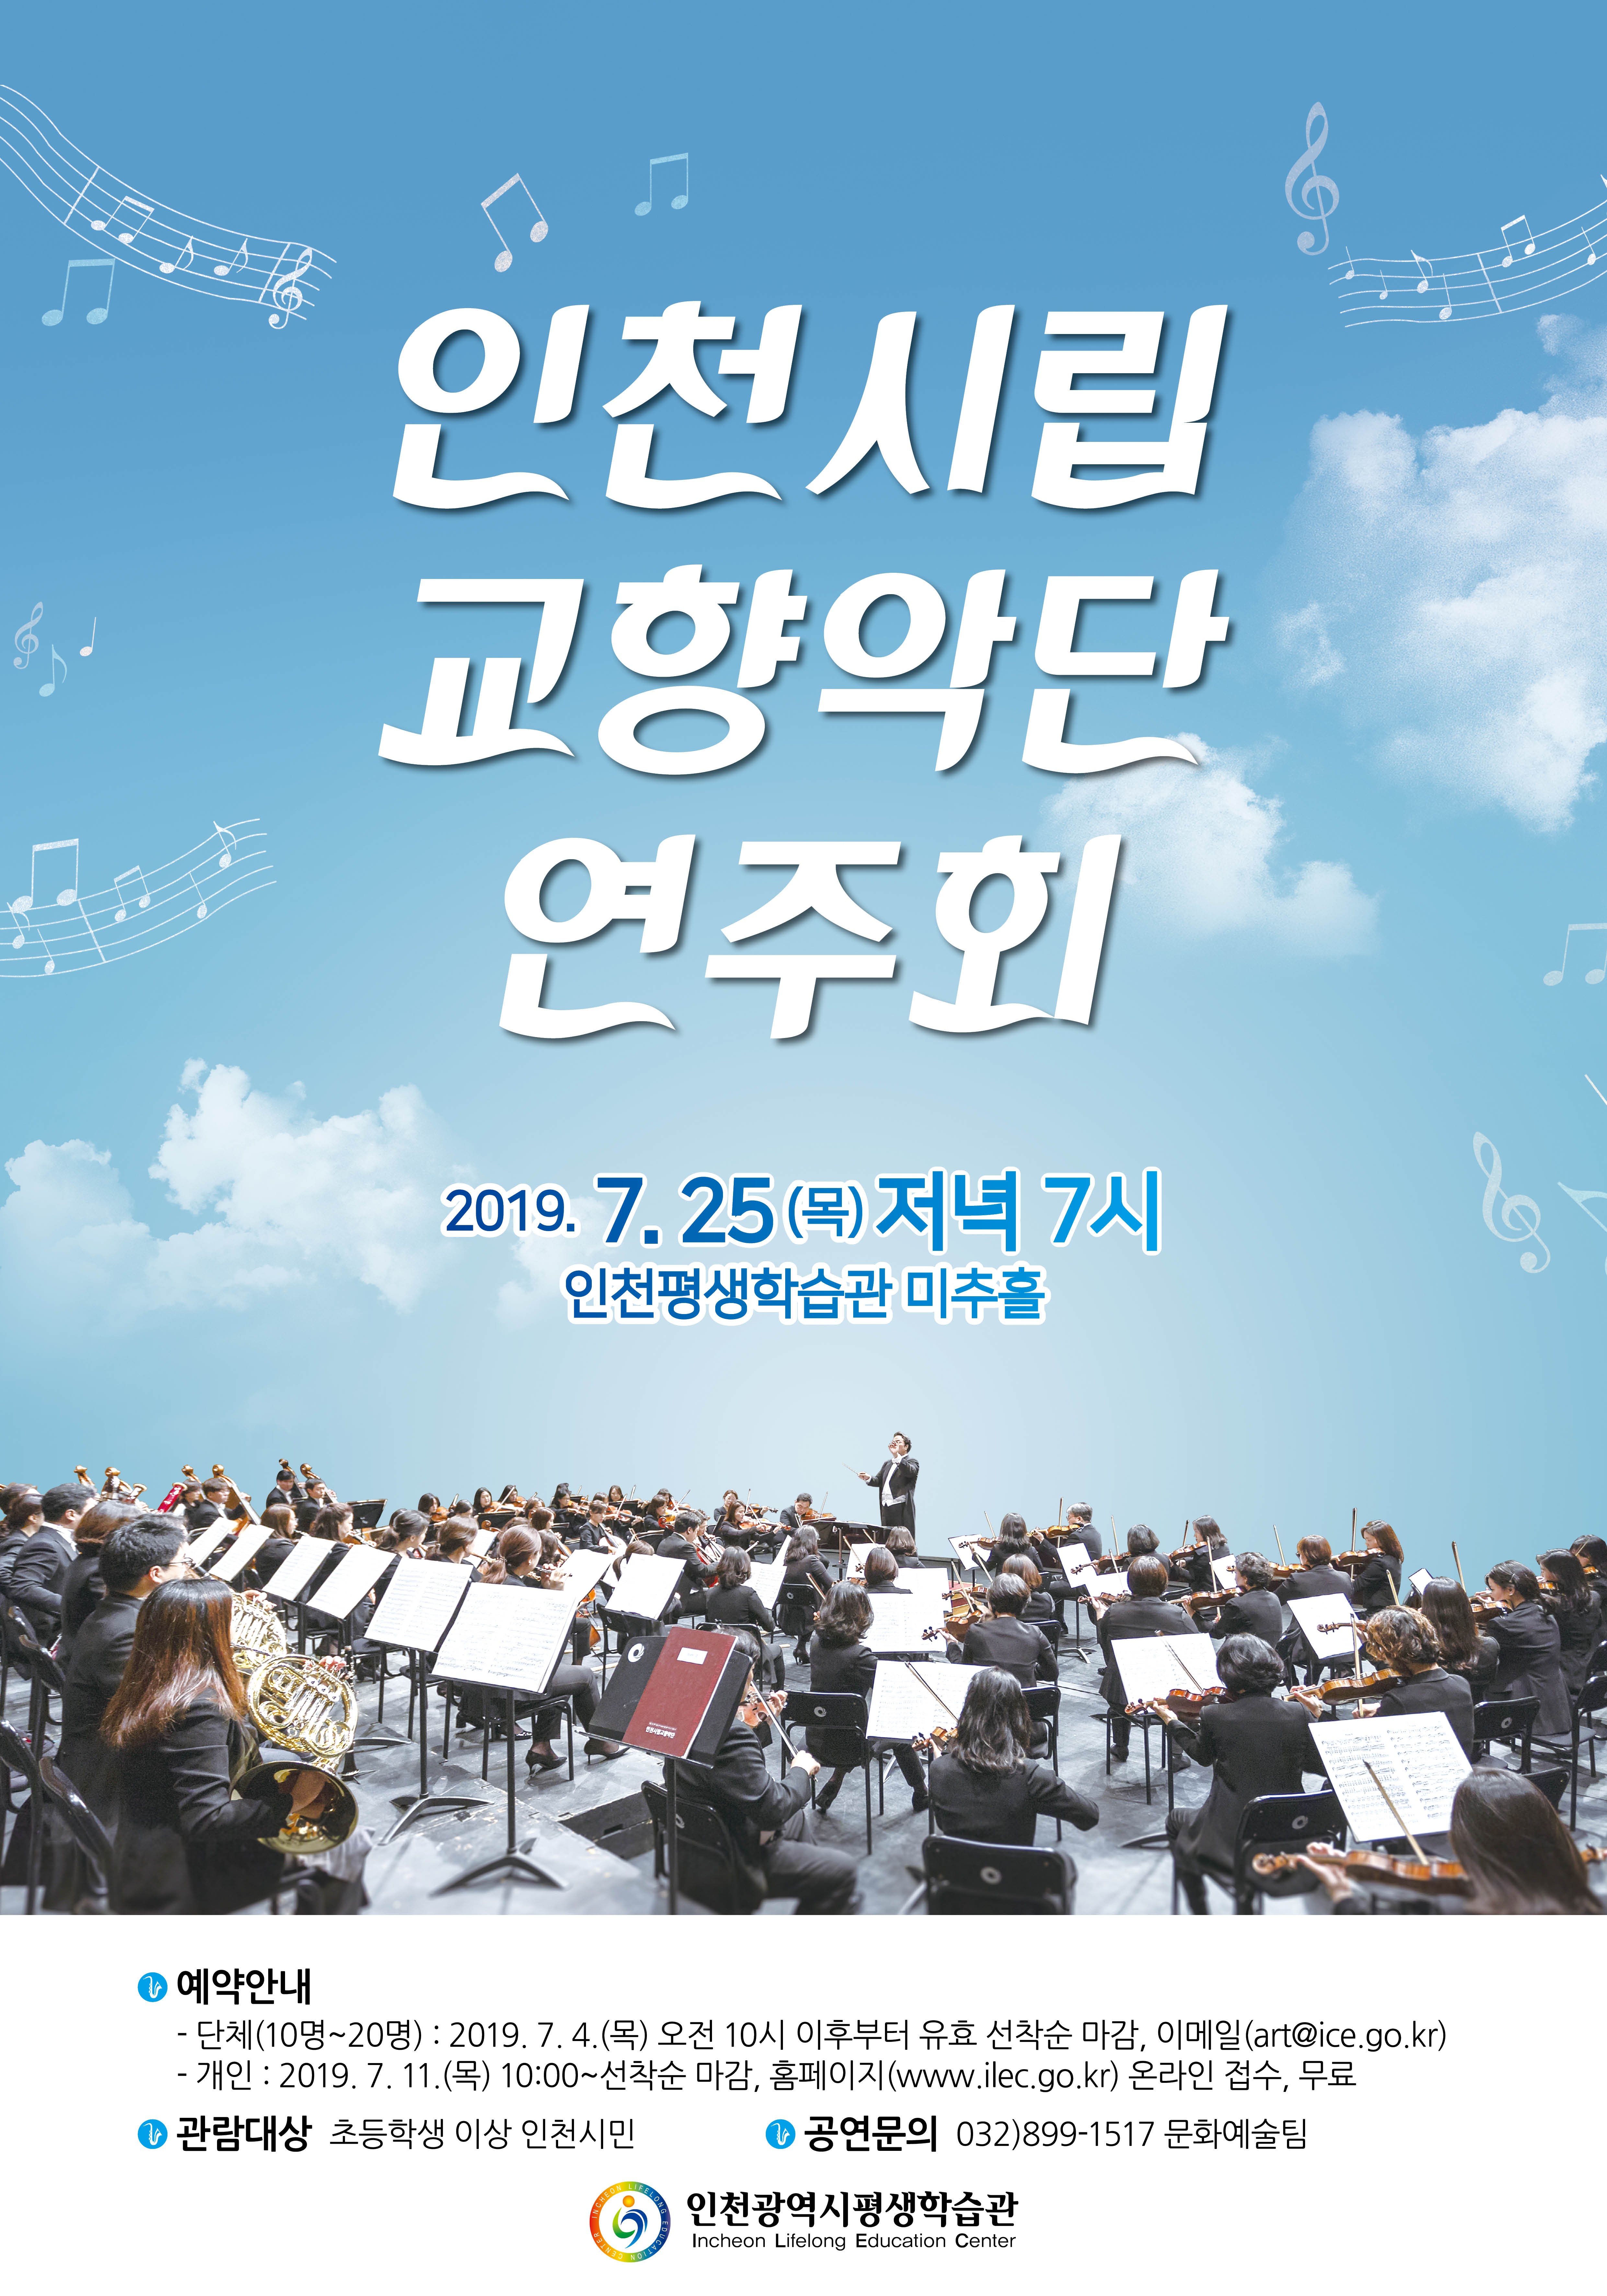 인천시립교향악단 연주회 관련 포스터 - 자세한 내용은 본문참조